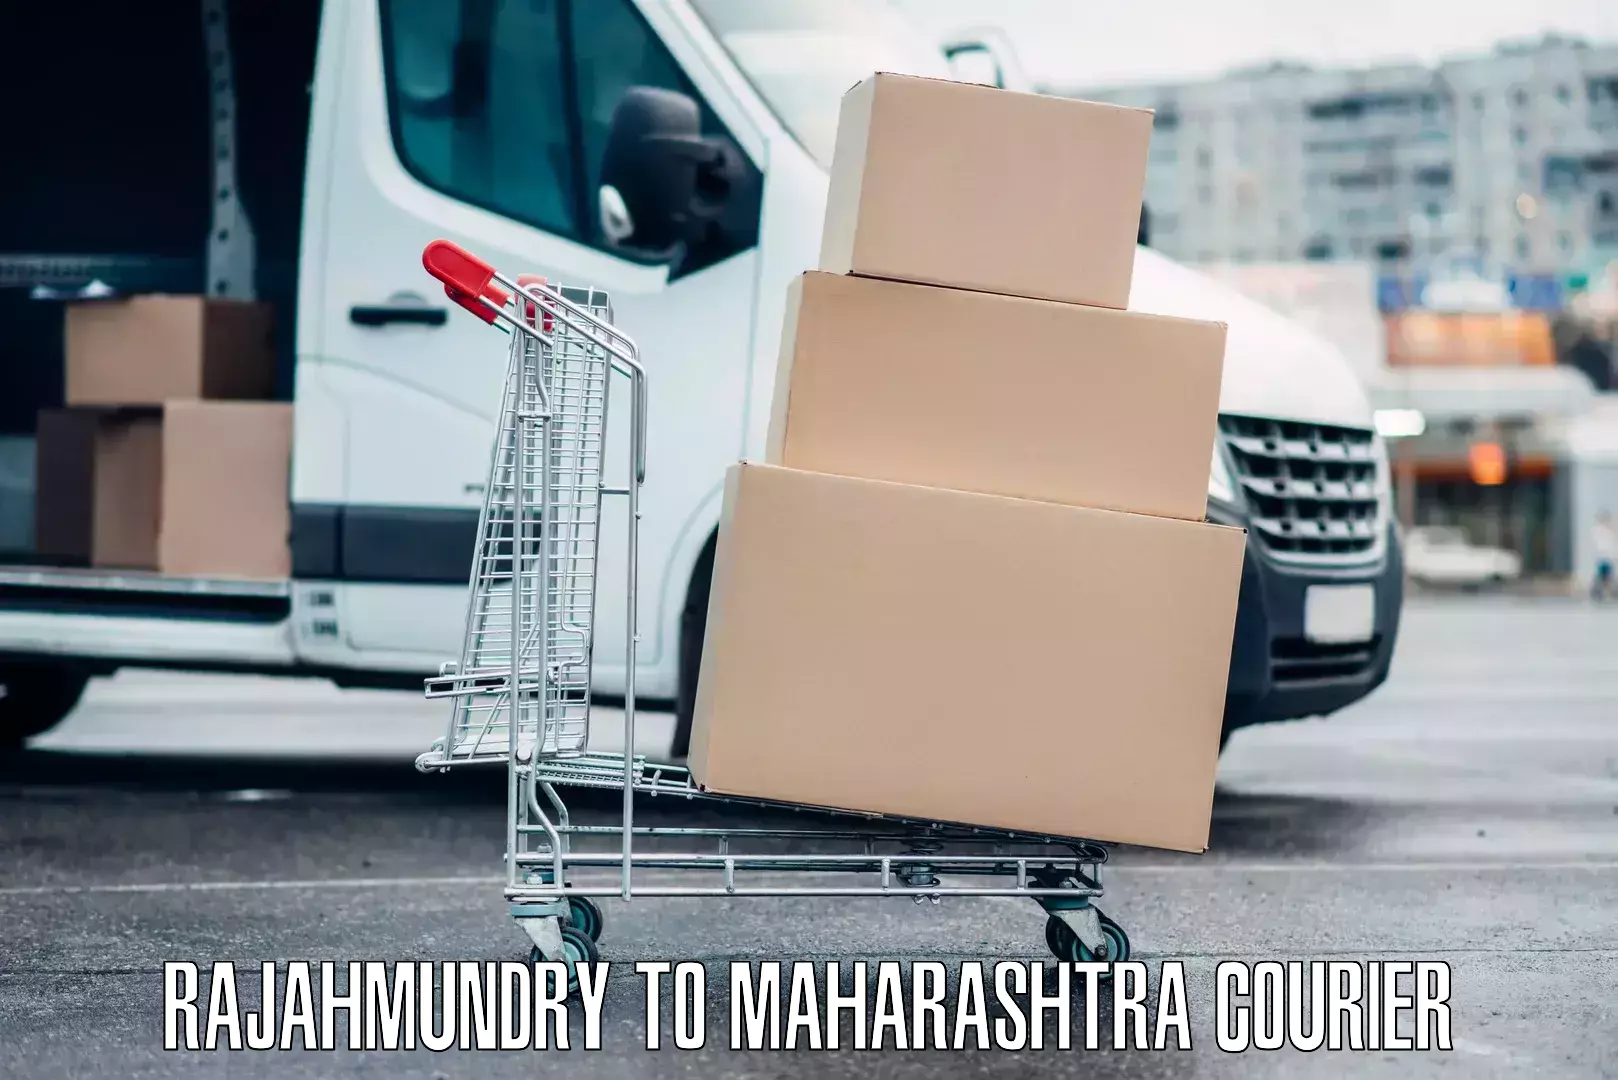 Baggage transport technology Rajahmundry to Maharashtra